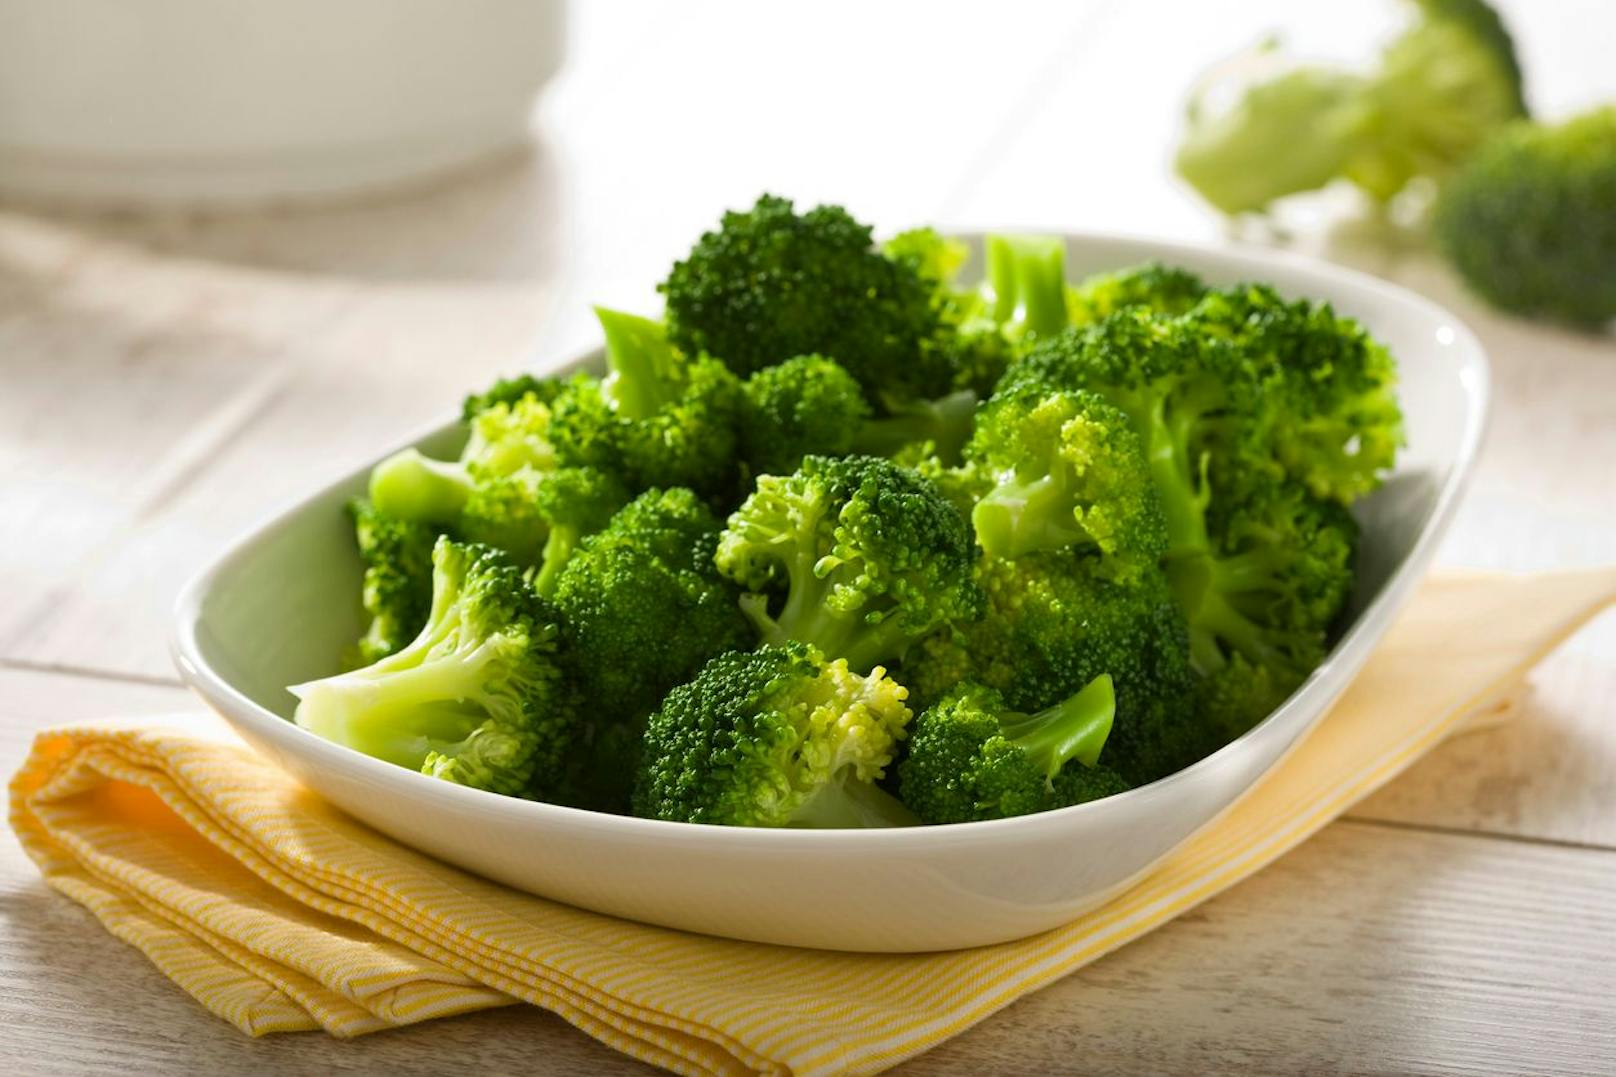 Brokkoli - Dieses gesunde Gemüse sollte frisch, knackig, grün und ausgereift im Kühlschrank gelagert werden. Falls nötig, dann kannst du das Essen auch in eine Frischhaltefolie einwickeln.